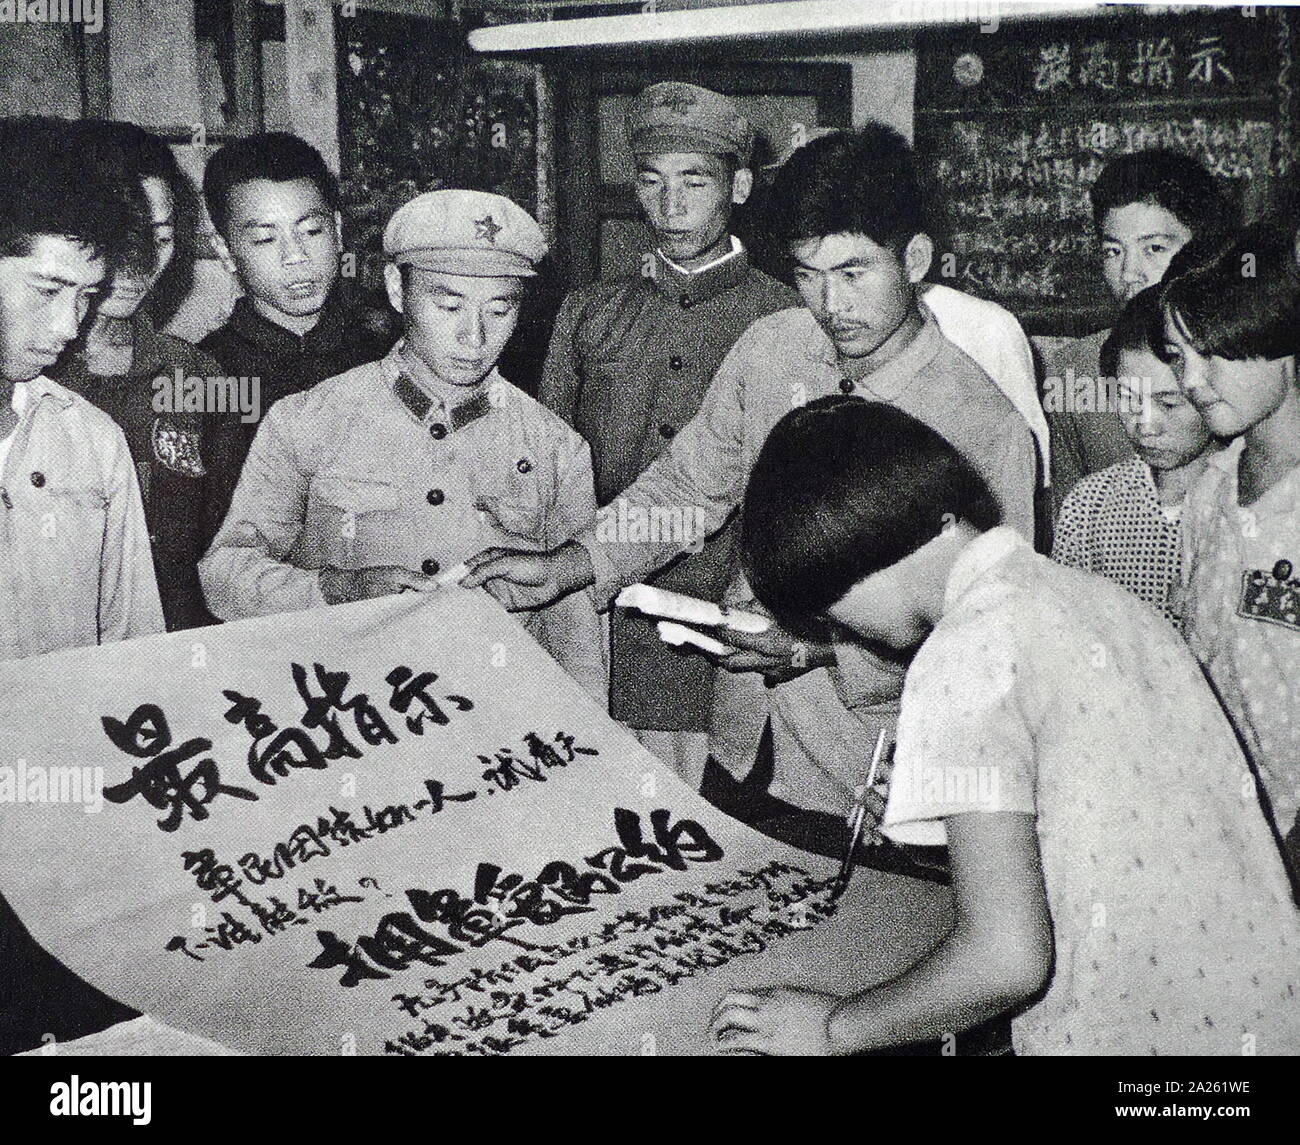 Tenant une bannière de la critique révolutionnaire, pendant la Révolution culturelle. Hanzhuang située dans le comté de Pinggu, Beijing Banque D'Images